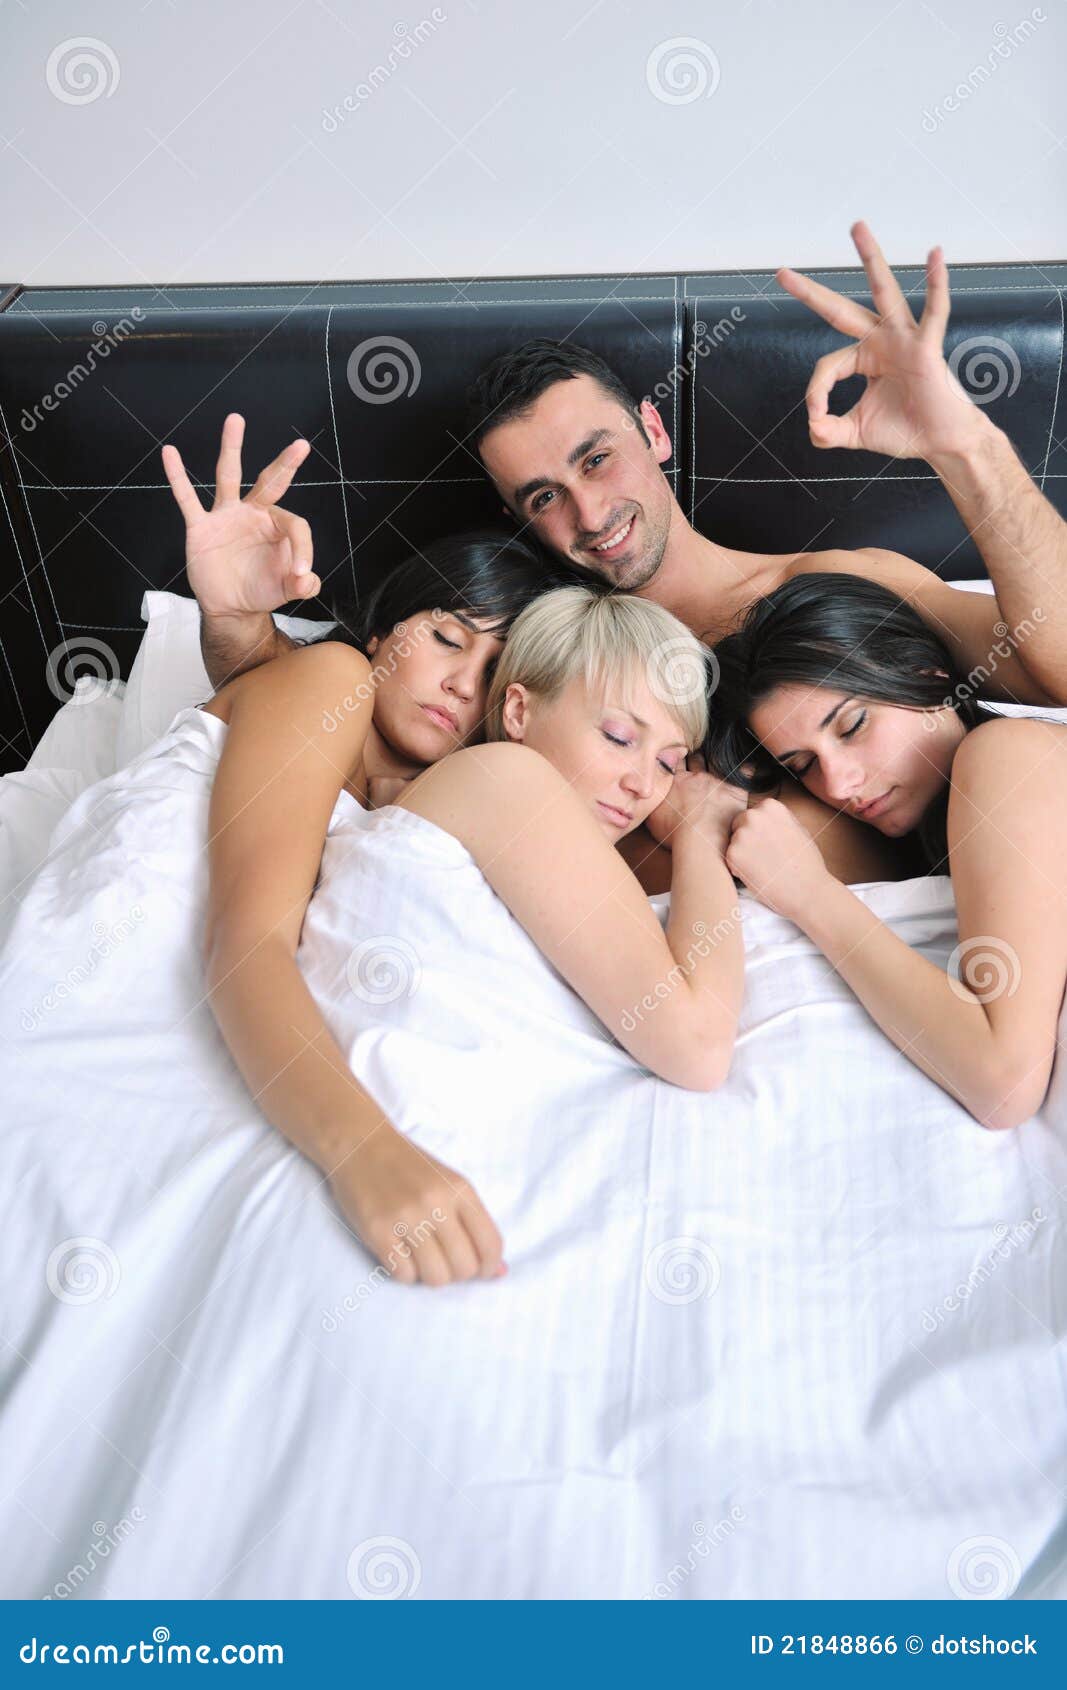 Женщину которая будет с тремя мужчинами. Трое людей в постели. Три человека в постели. Две девушки и парень в постели. Девушка и три мужчины в постели.